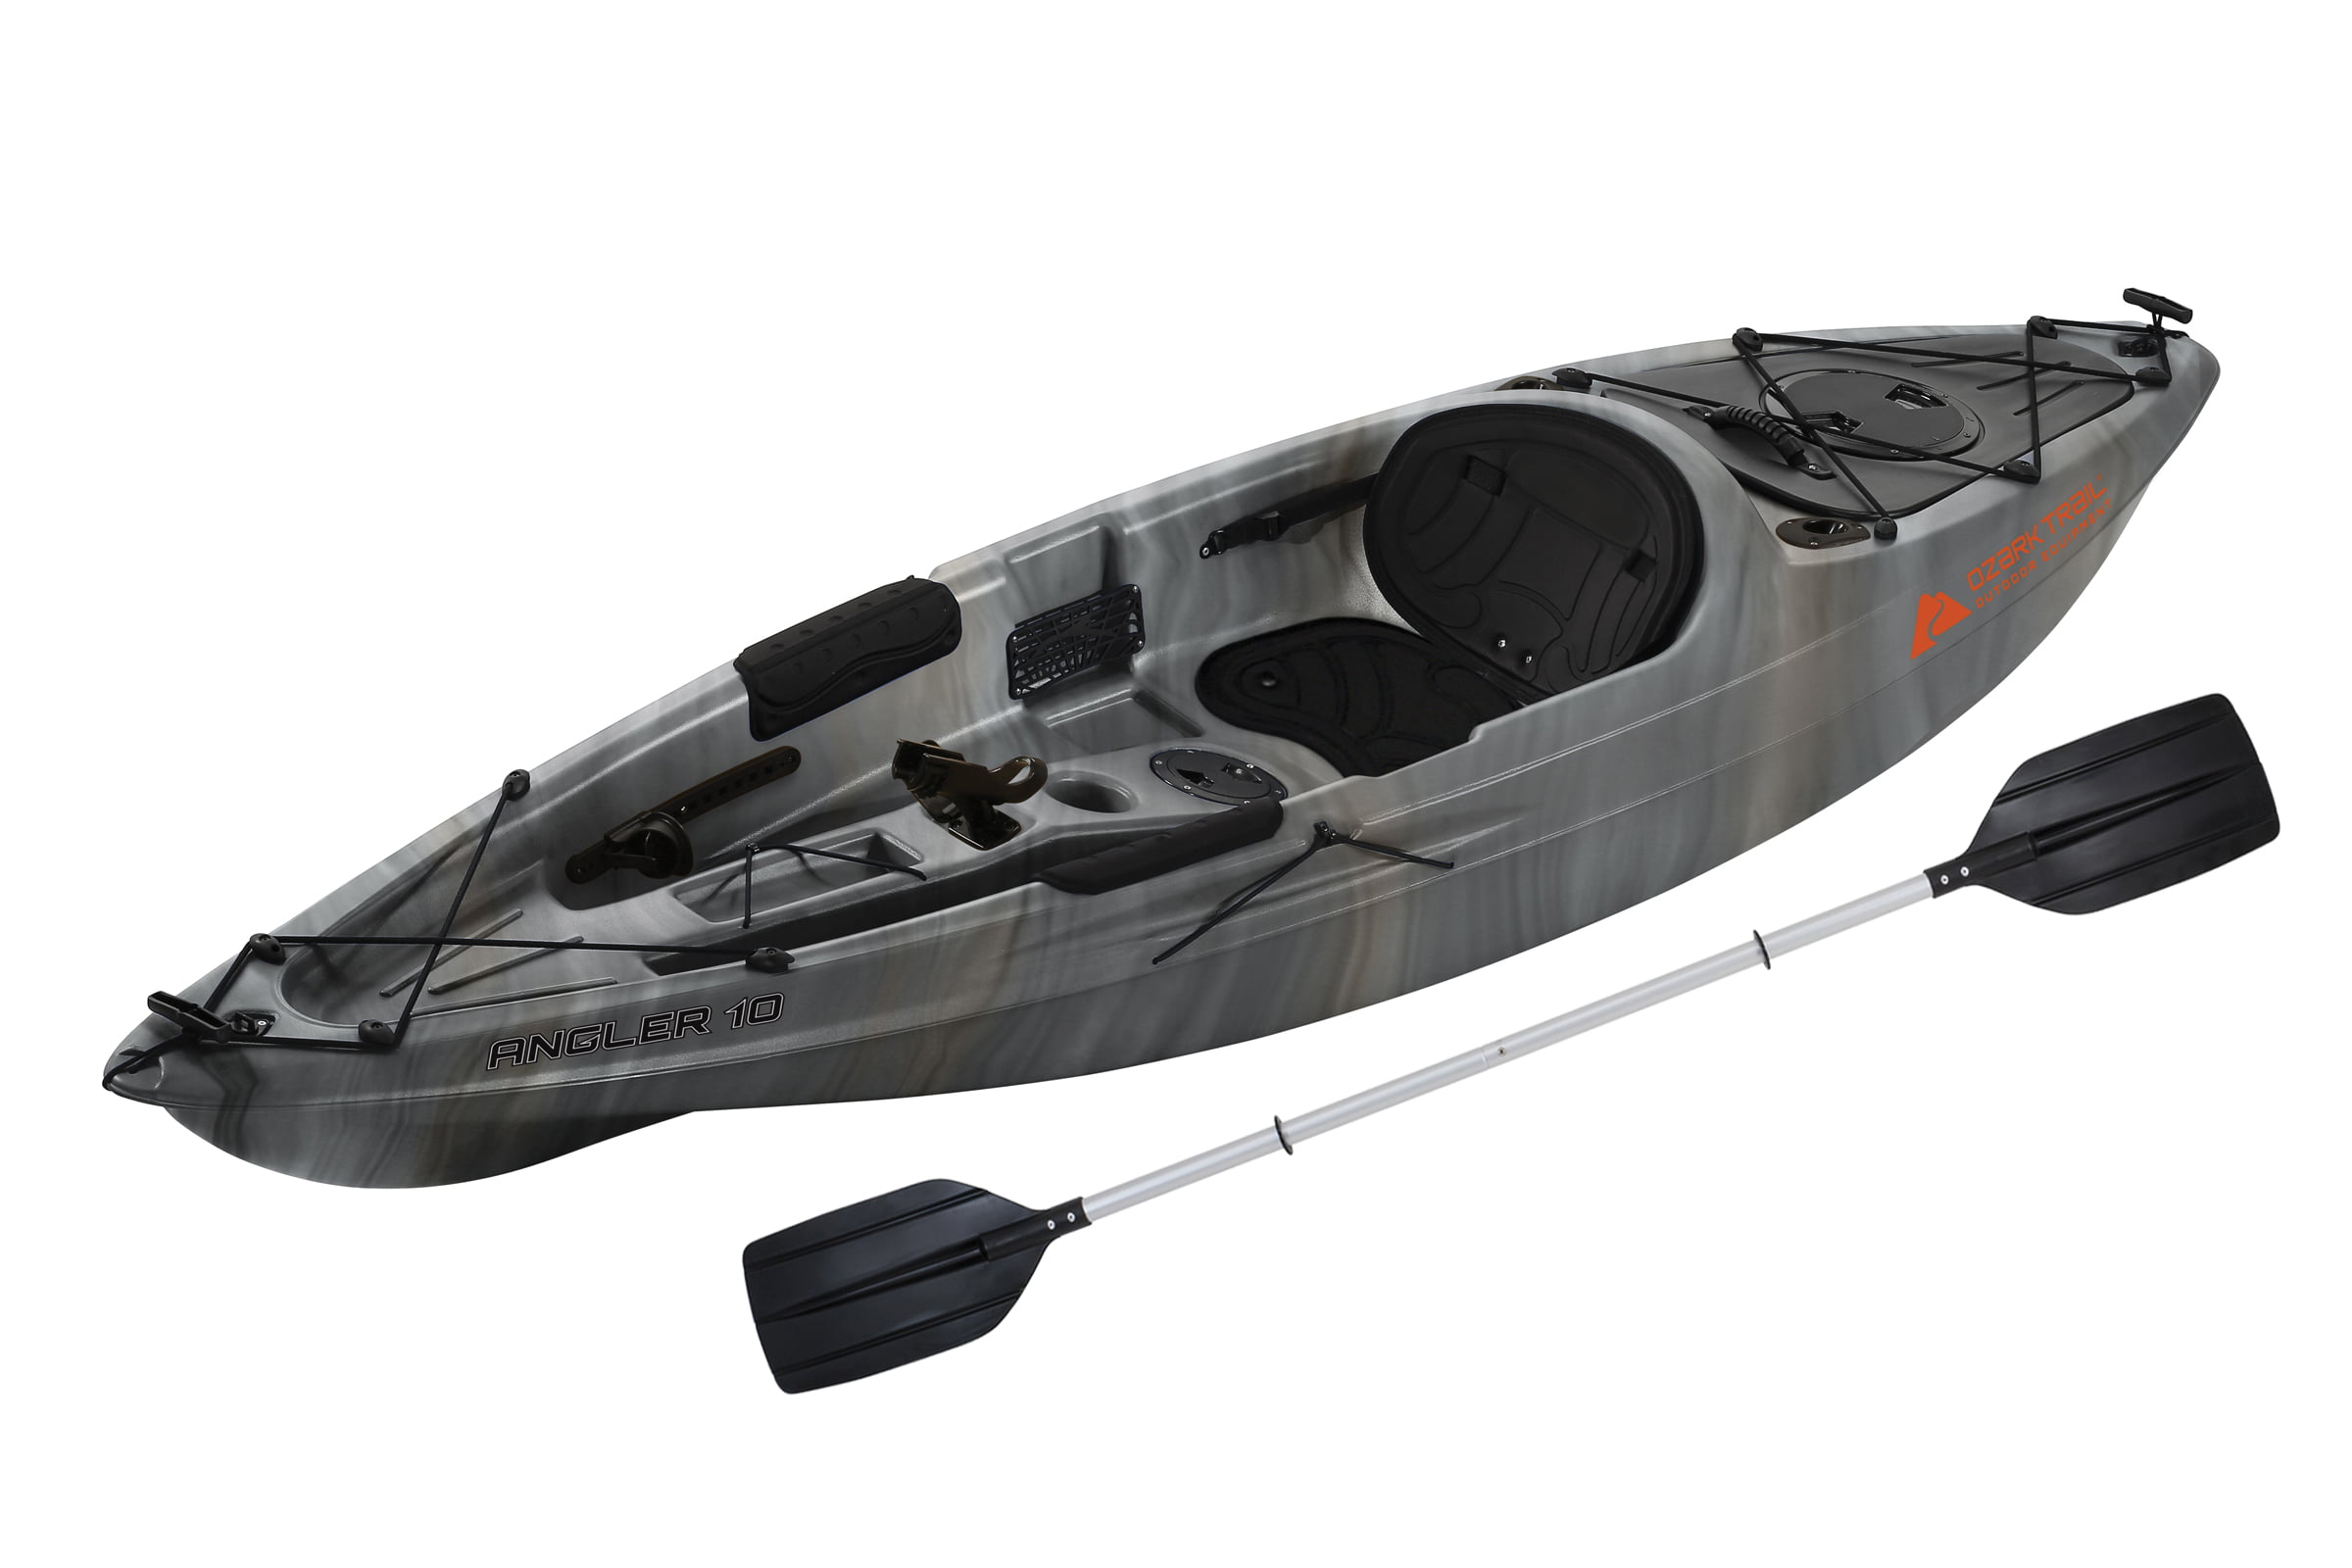 Fishing Kayaks For Sale At Walmart Kayak Explorer